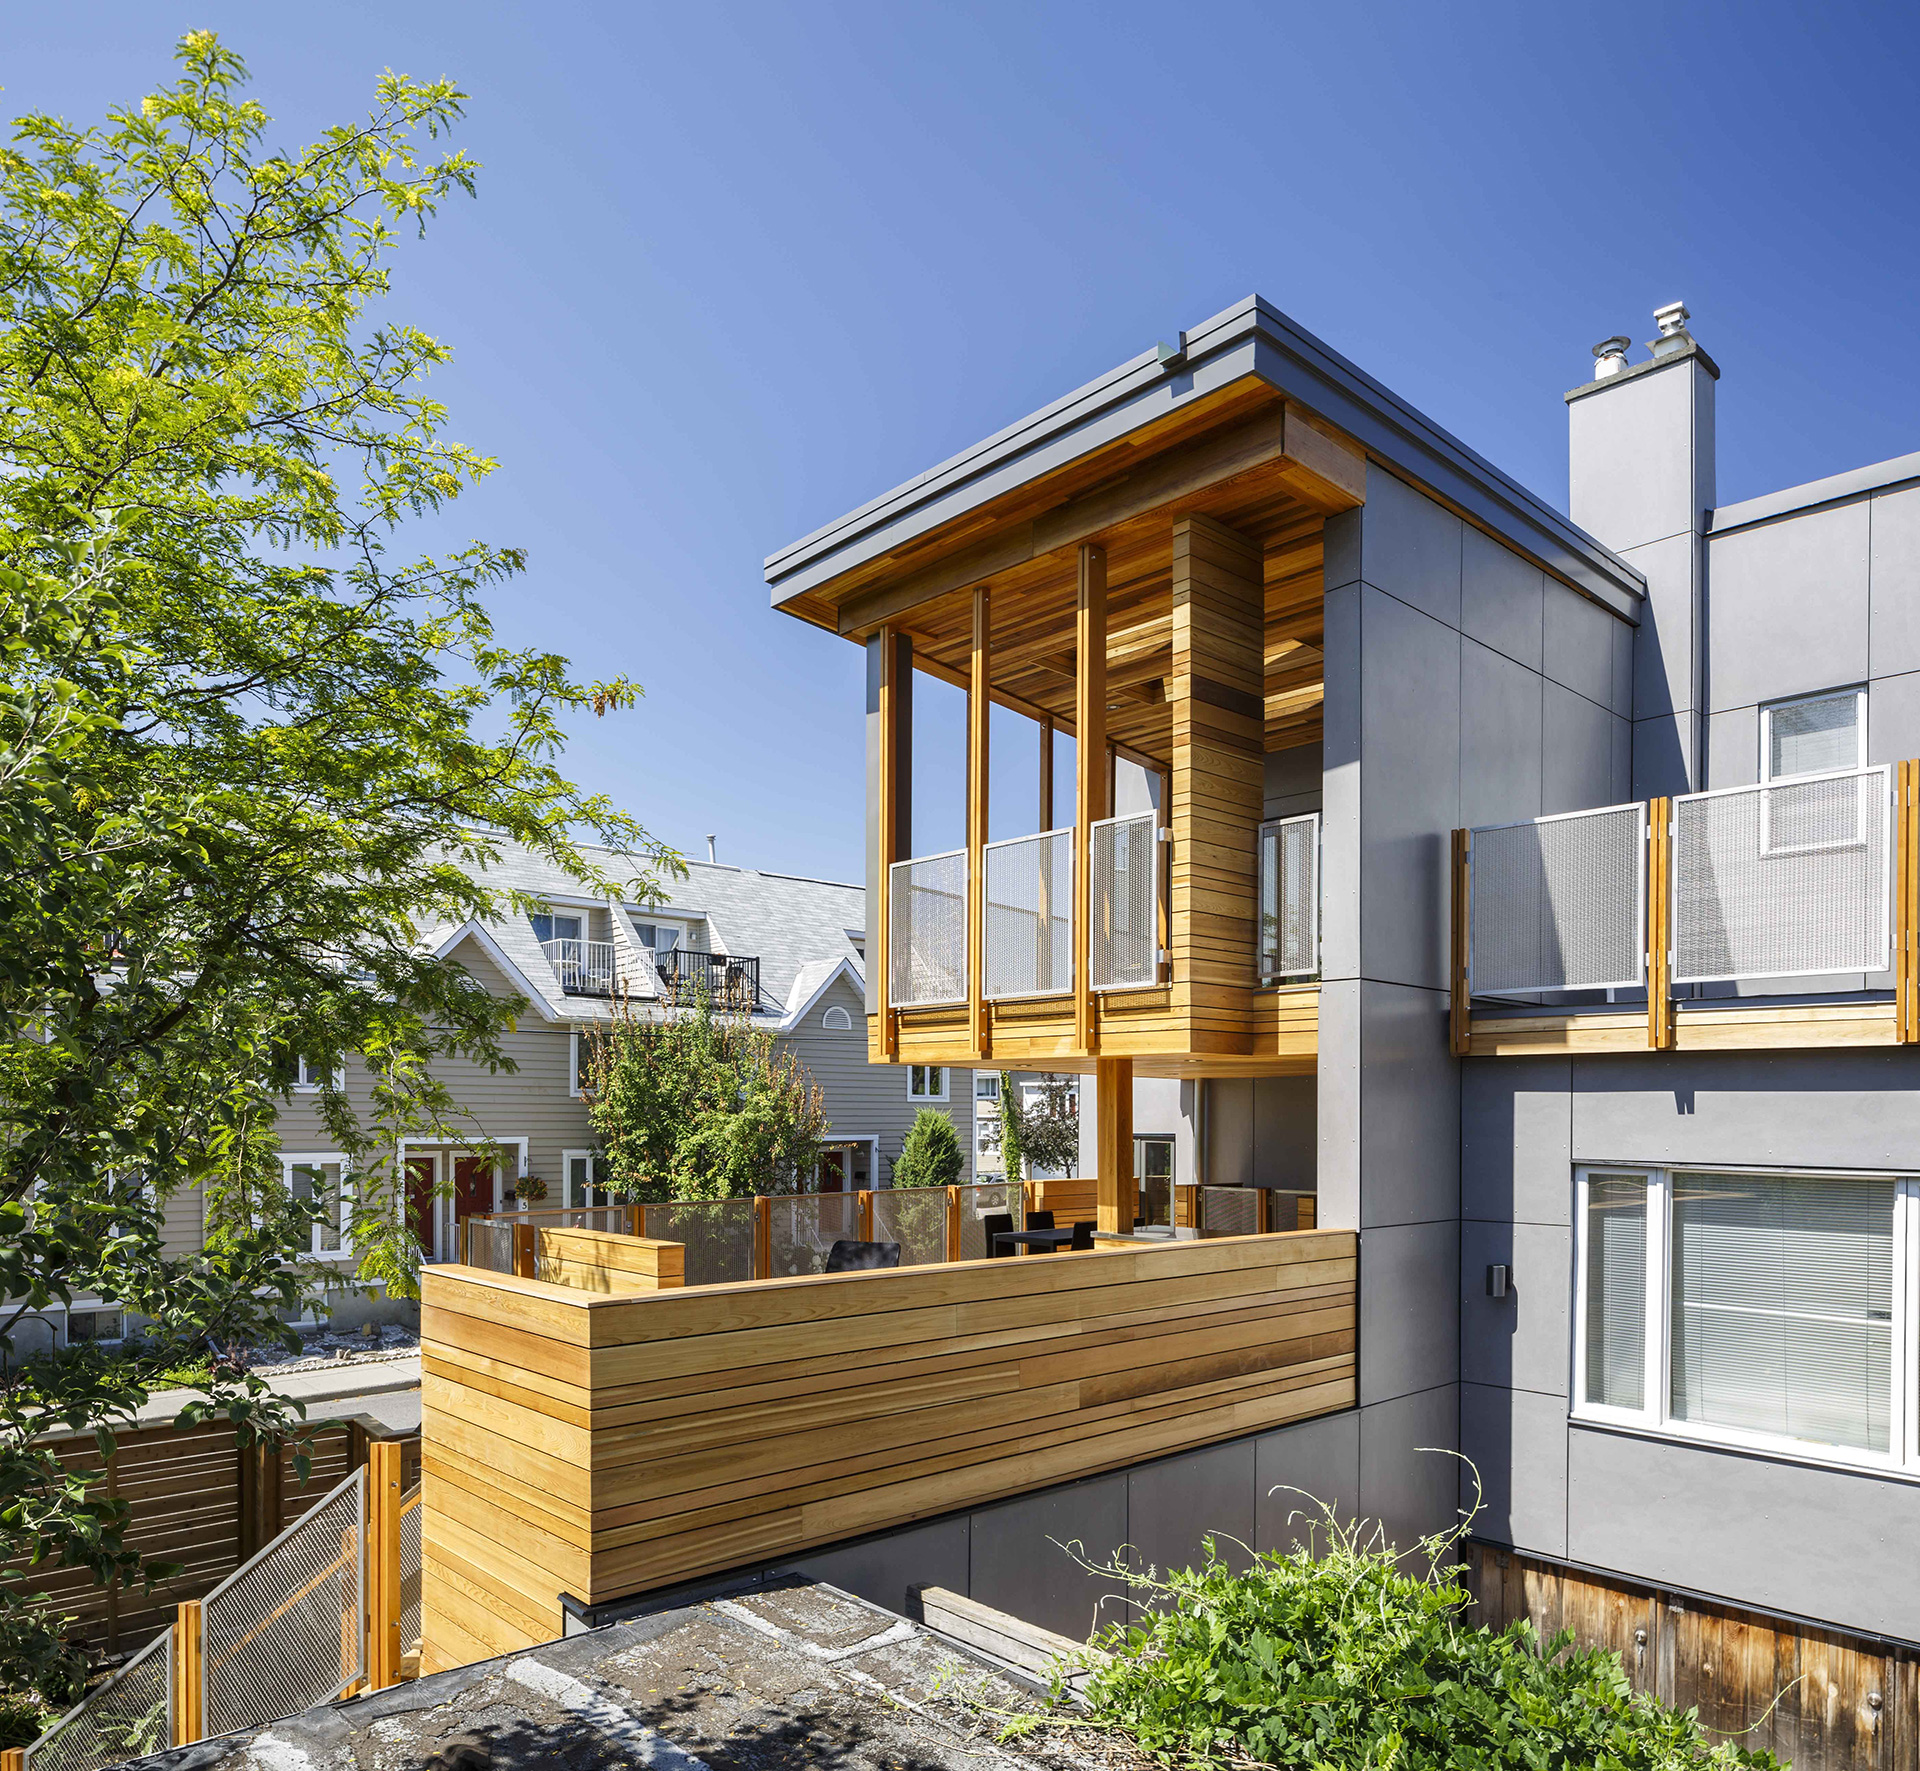 Double Decker Deck - Christopher Simmonds Architect